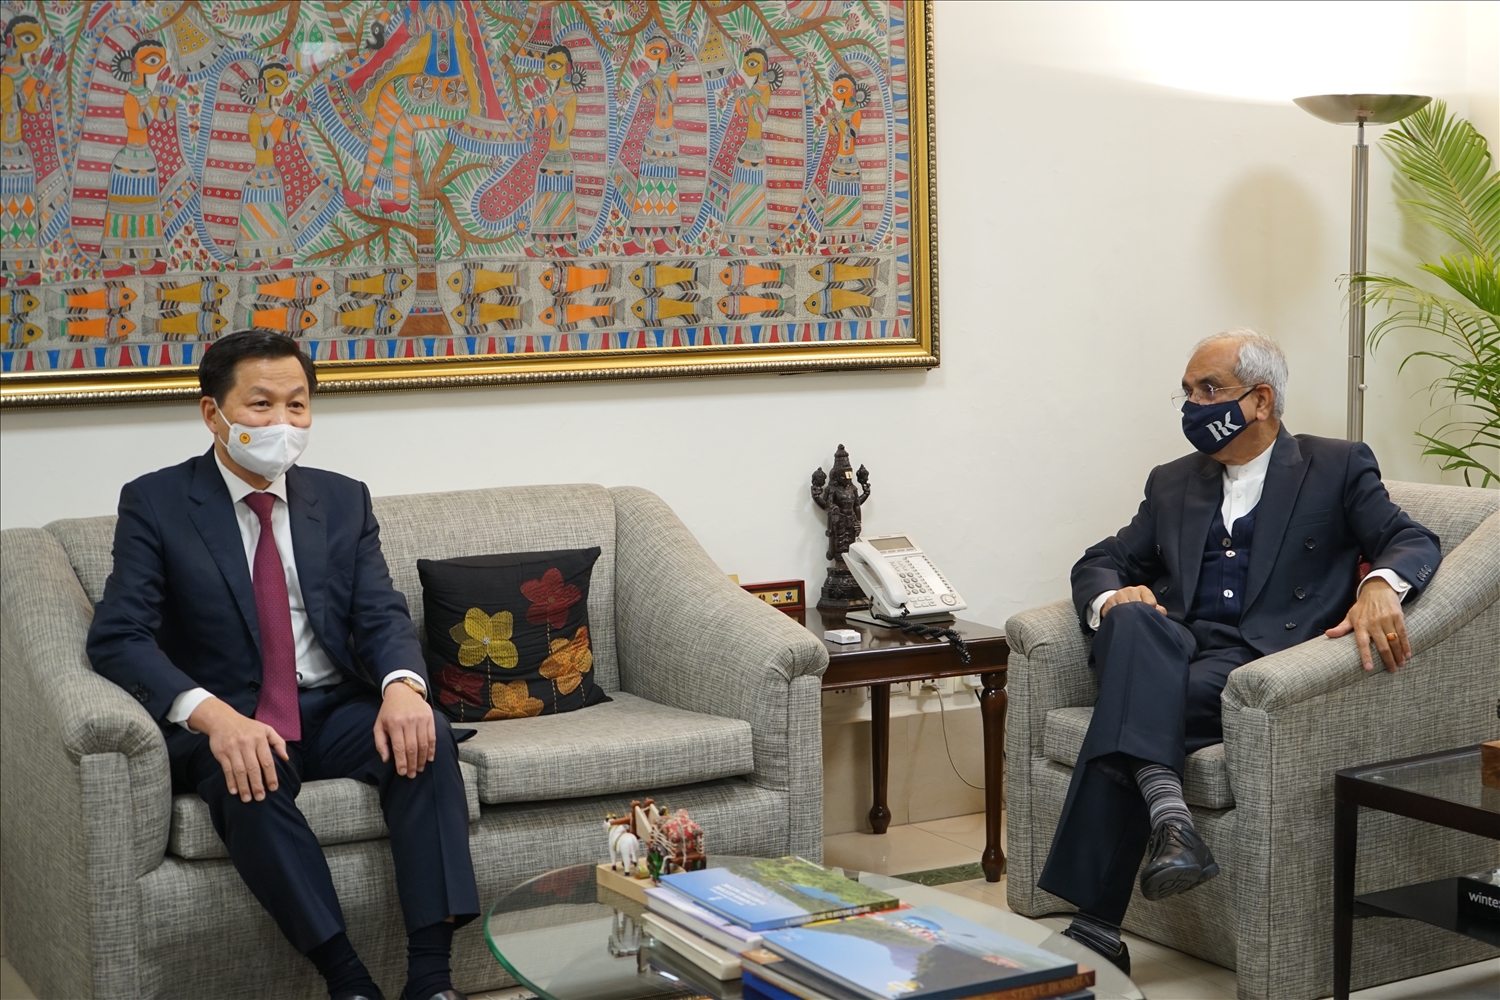 Phó Thủ tướng Lê Minh Khái đến thăm Viện Chuyển đổi quốc gia Ấn Độ và làm việc với Phó Chủ tịch Rajiv Kumar và lãnh đạo của viện